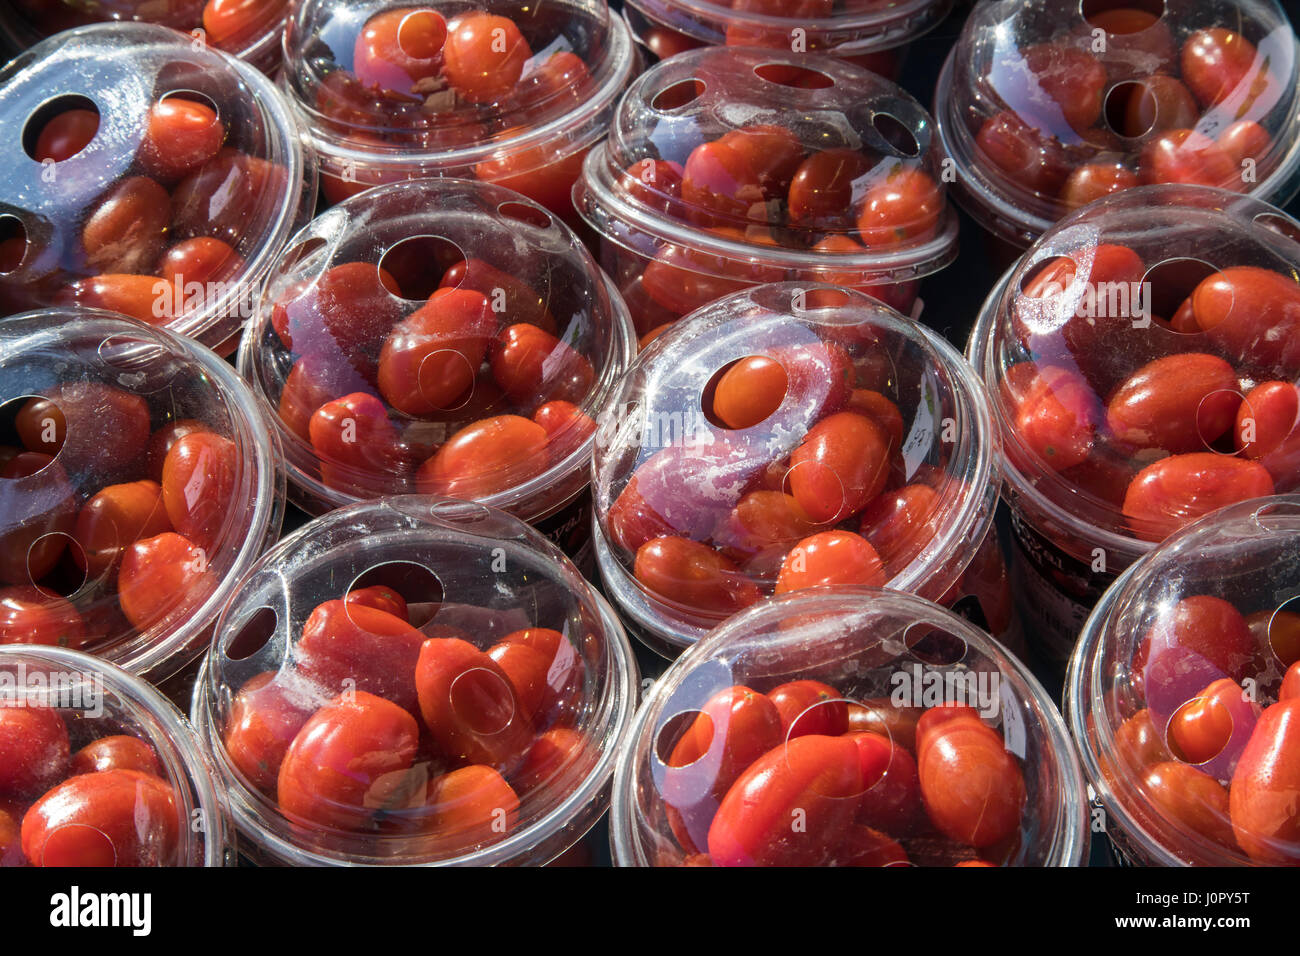 Marché hebdomadaire, stand de marché, des légumes frais, tomates, petits paniers en plastique, Banque D'Images